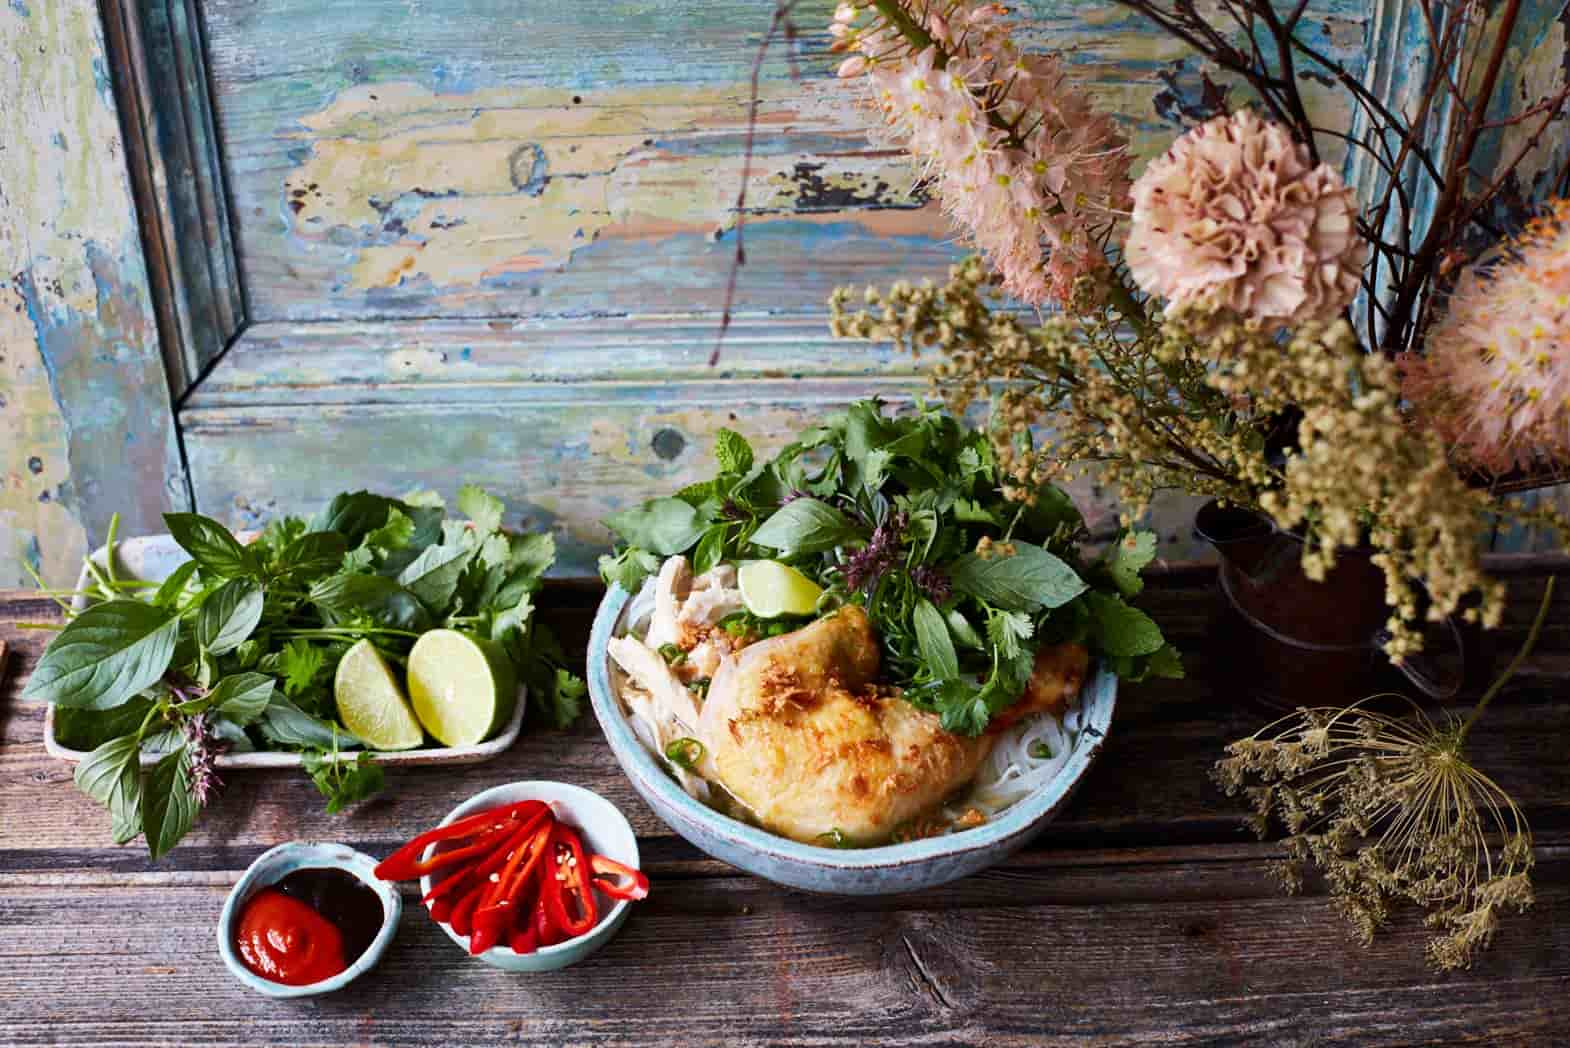 Chicken Pho Recipe from Little Viet Kitchen chef Thuy Pham